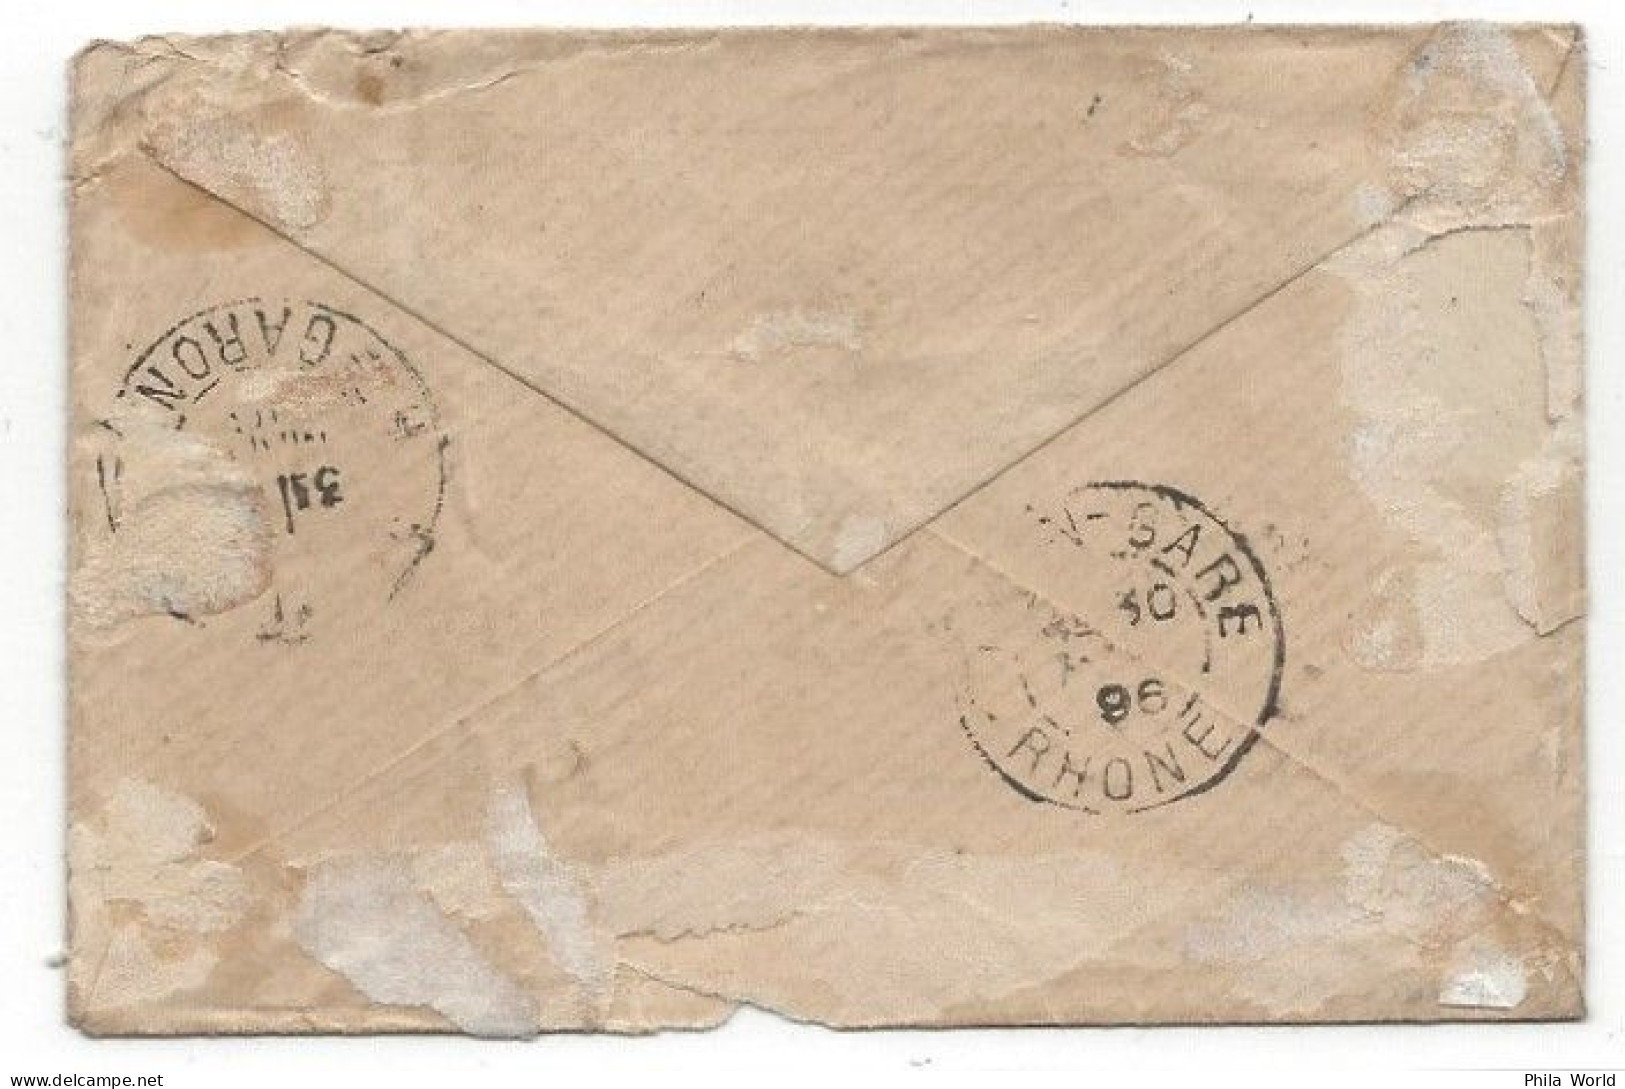 JERUSALEM 1896 Lettre Cover En-tête FRERES ECOLES CHRETIENNES Pour FRANCE Haute-Garonne Via LYON GARE RHONE - Autres - Asie